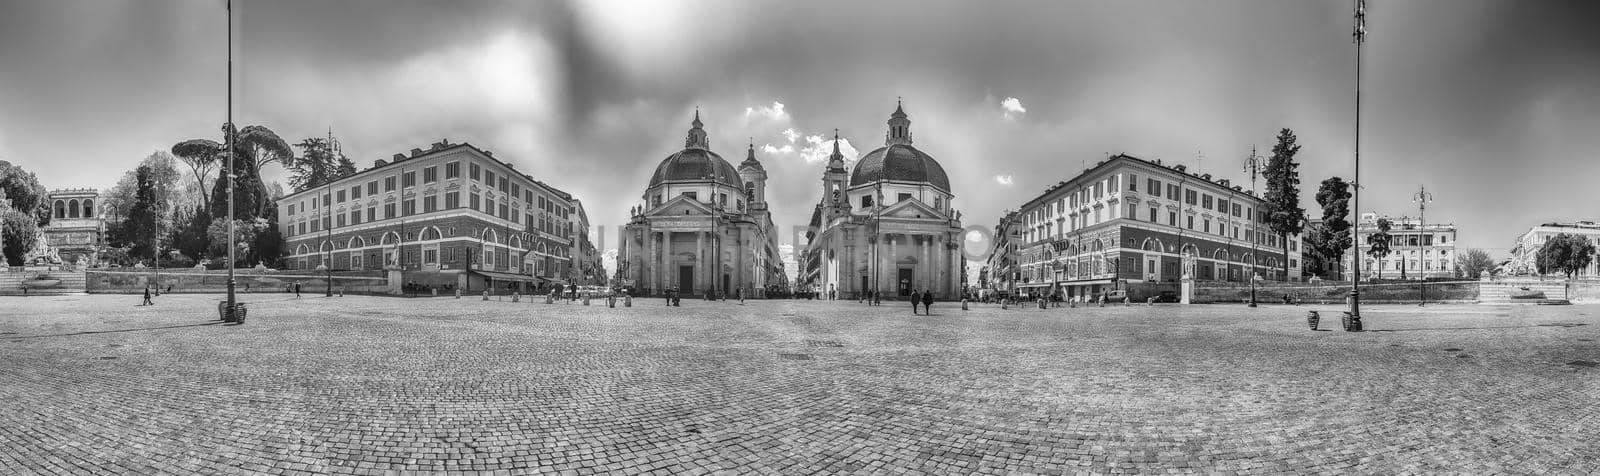 View of the twin churches, Piazza del Popolo, Rome, Italy by marcorubino